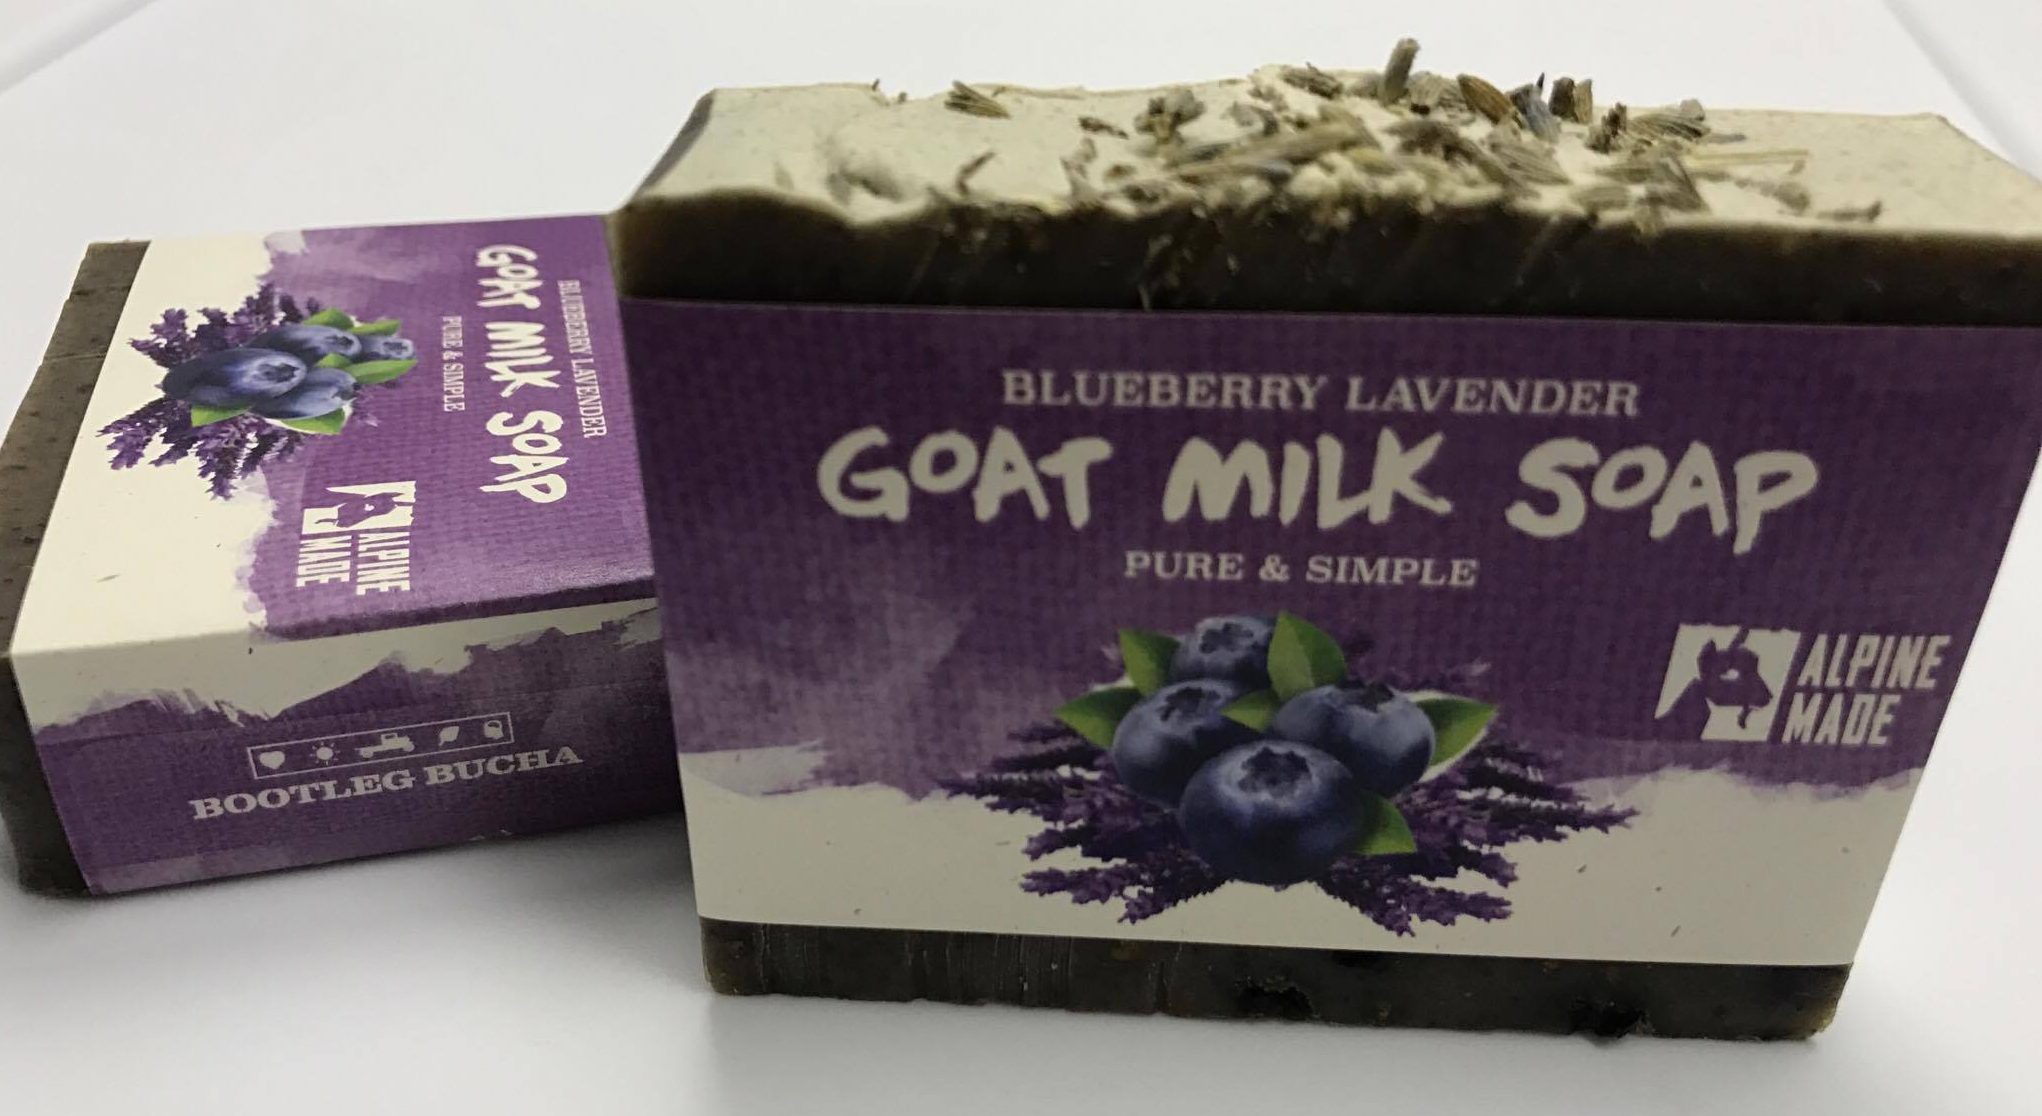 3/18 Prep Kitchen Pop Up & Blueberry Lavender Goat Milk Soap Launch